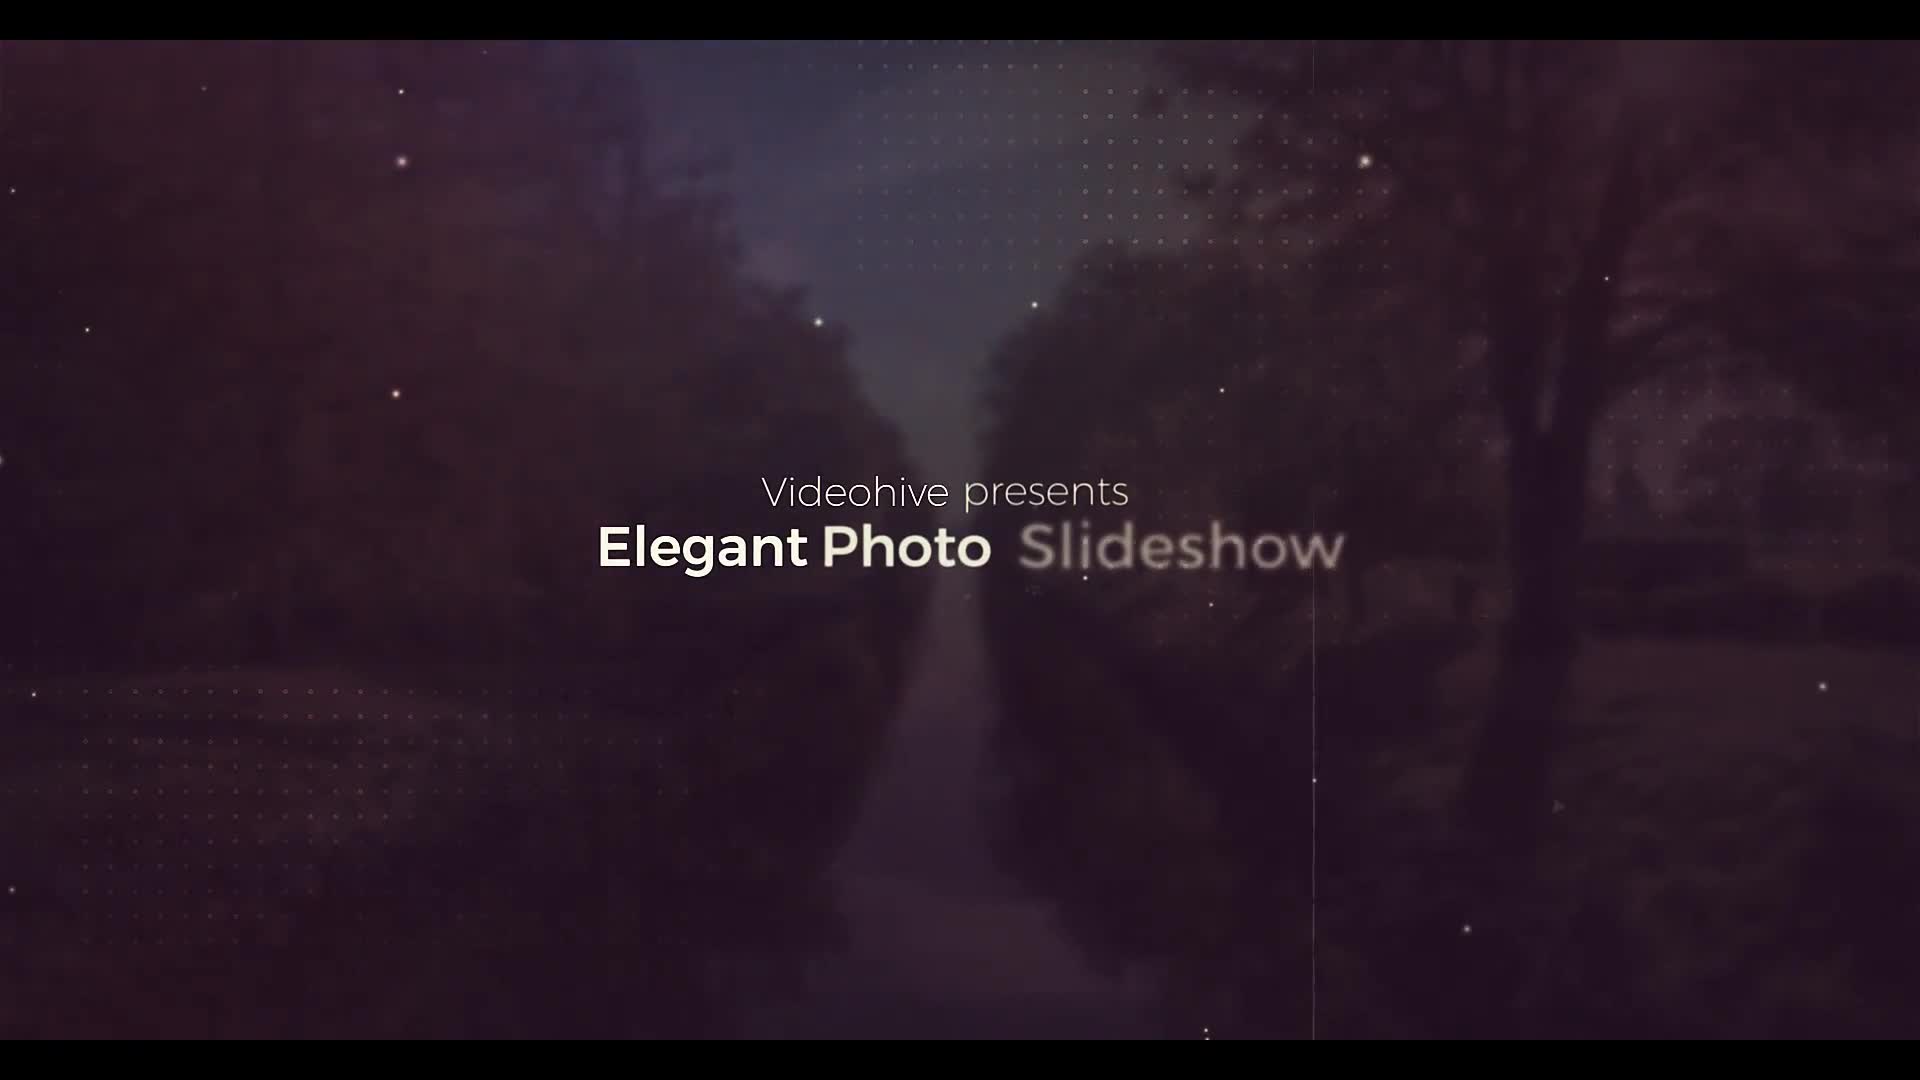 Elegant Photo Slideshow Videohive 26341797 Premiere Pro Image 1